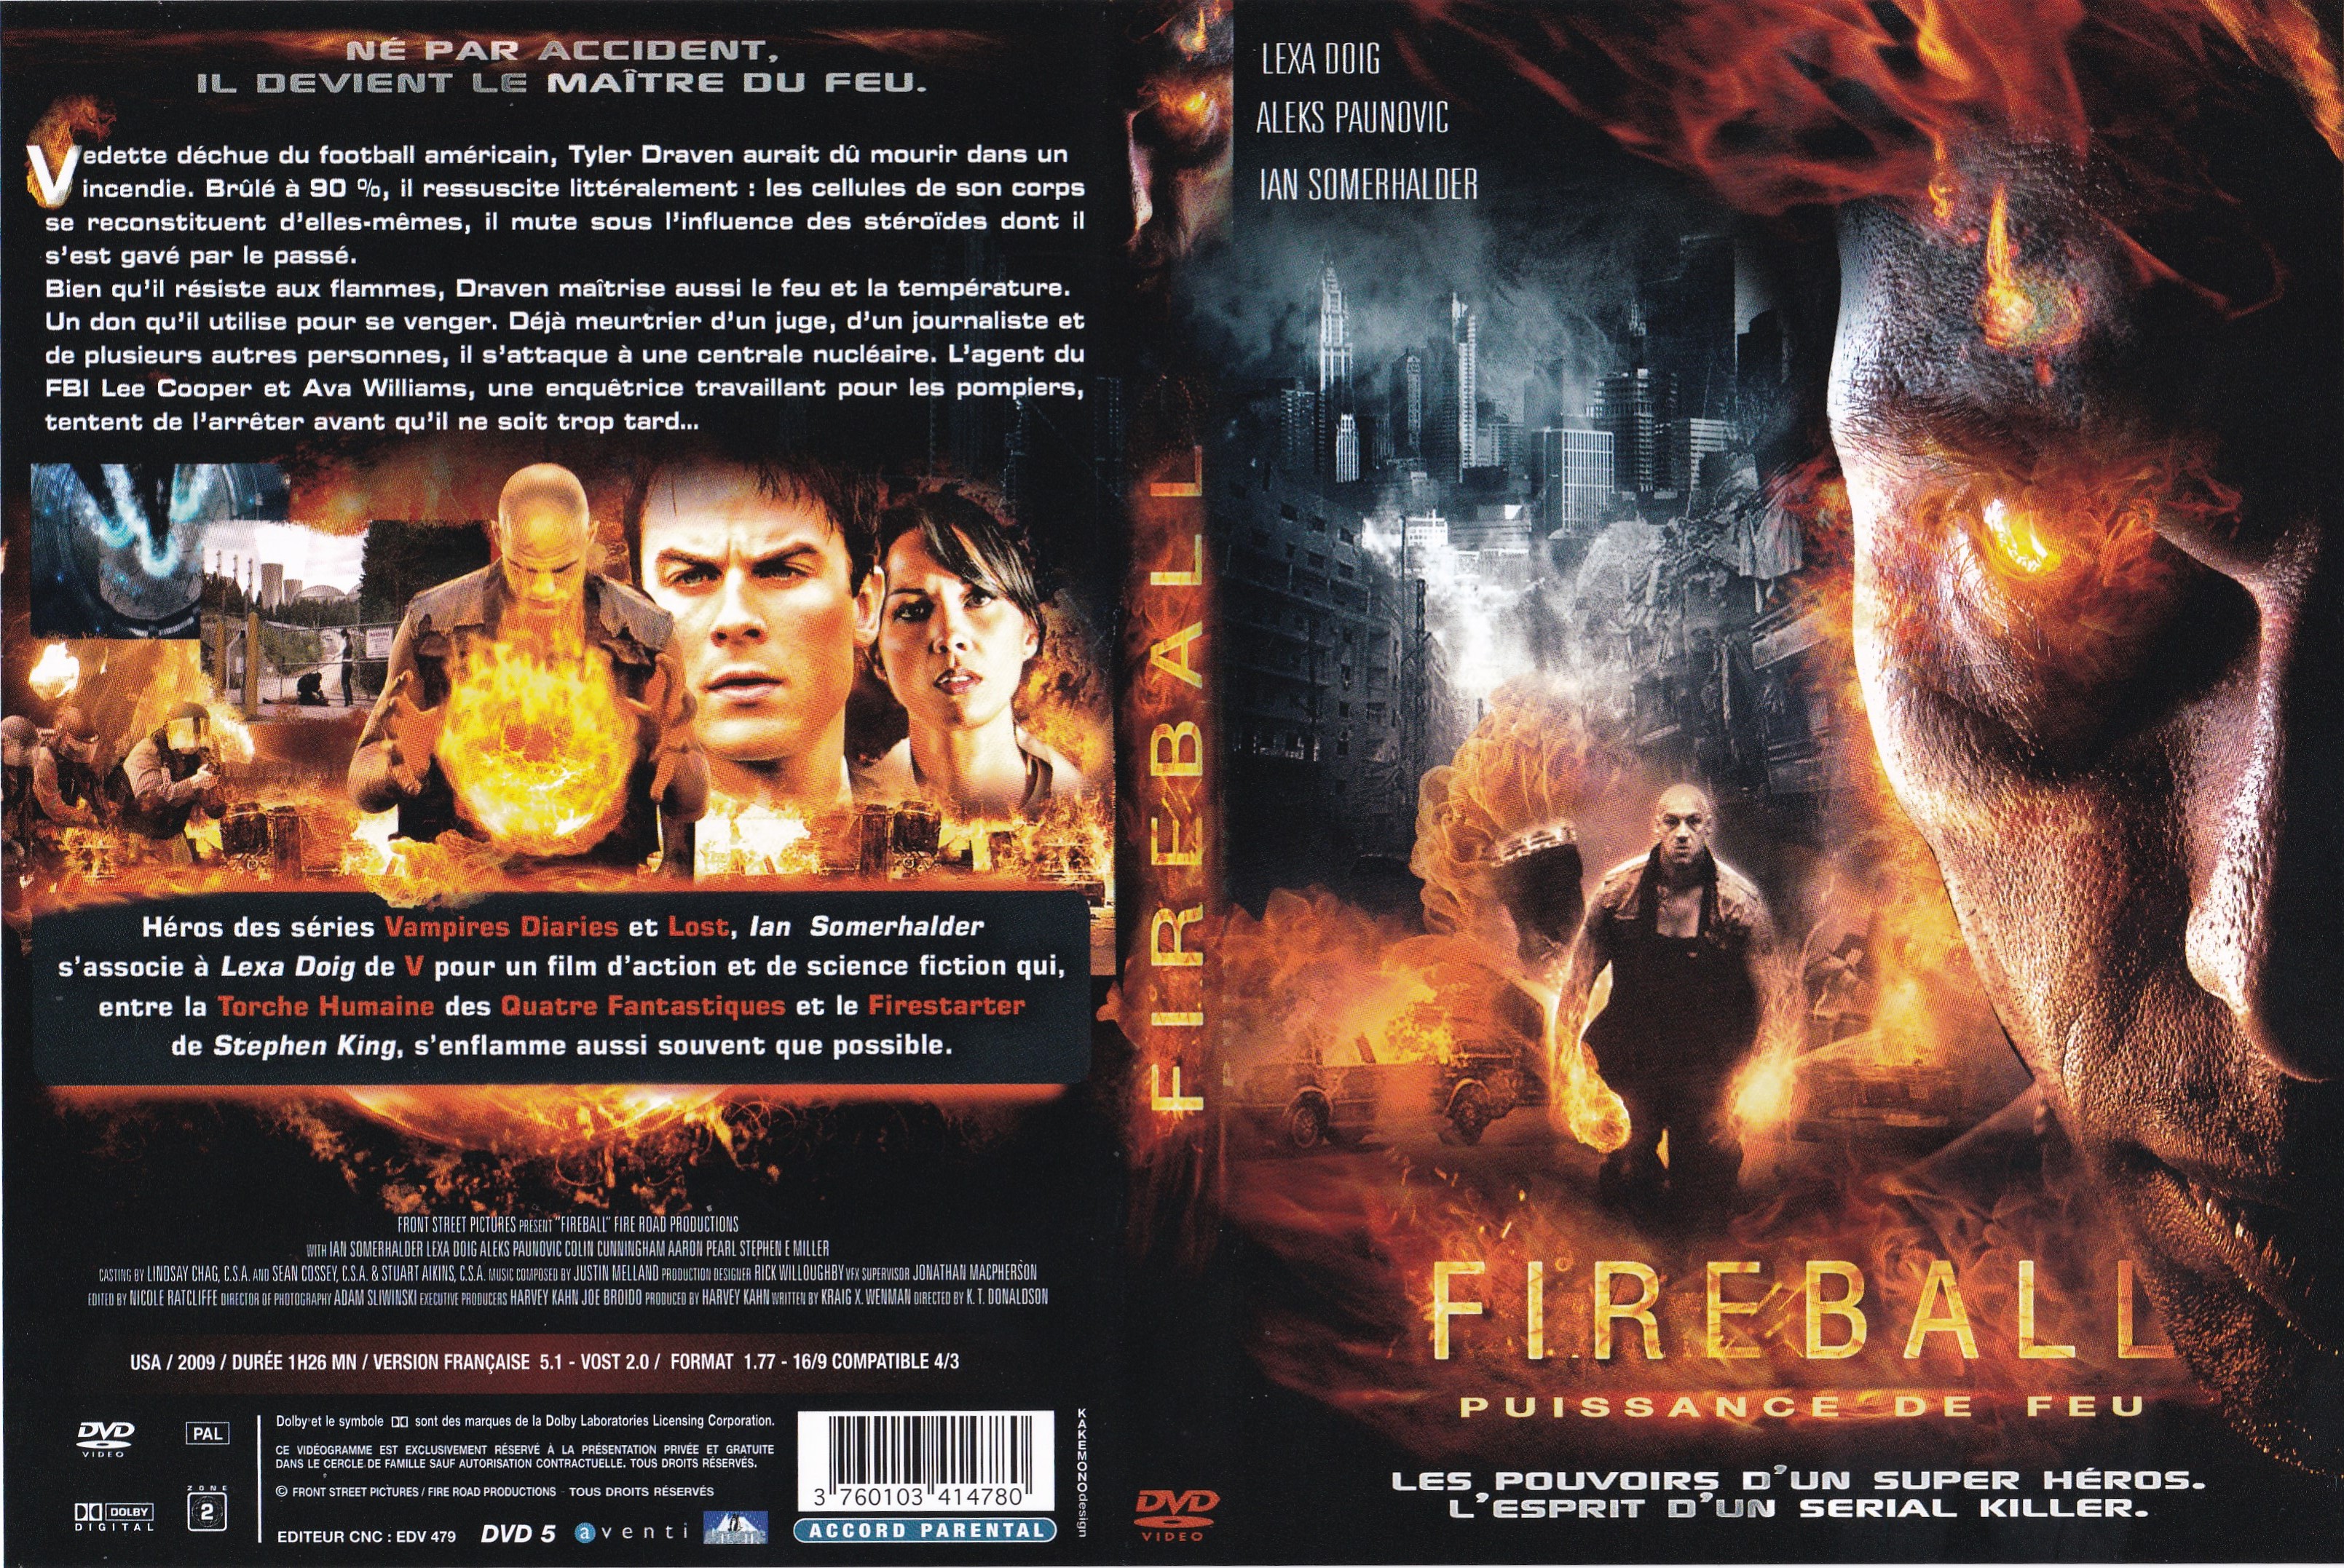 Jaquette DVD Fireball Puissance de Feu